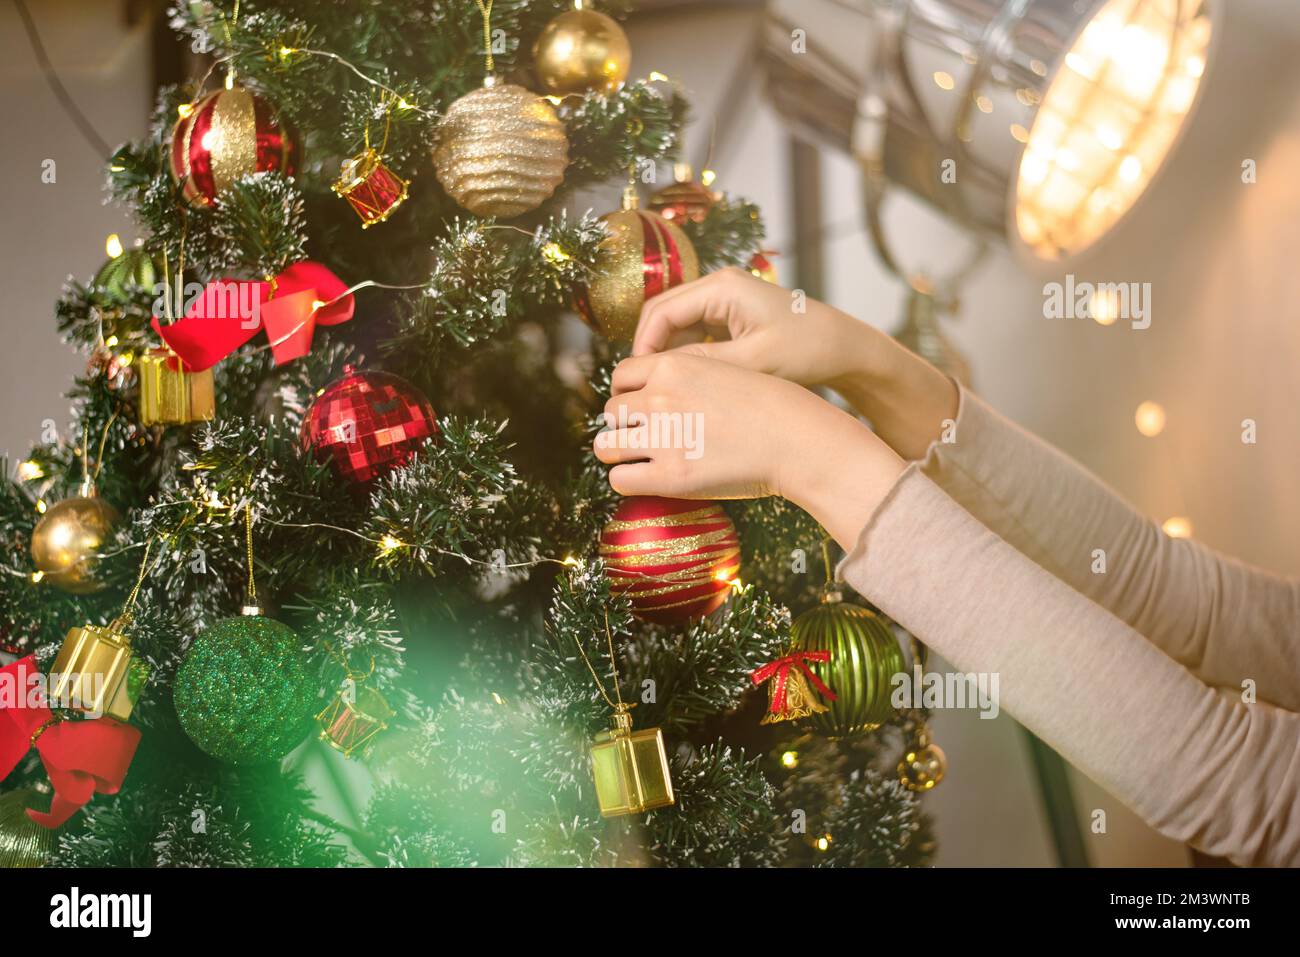 femme tenant noël ornement gros plan. personne décorent l'arbre de noël dans une maison pour les fêtes. salutations de la saison Banque D'Images